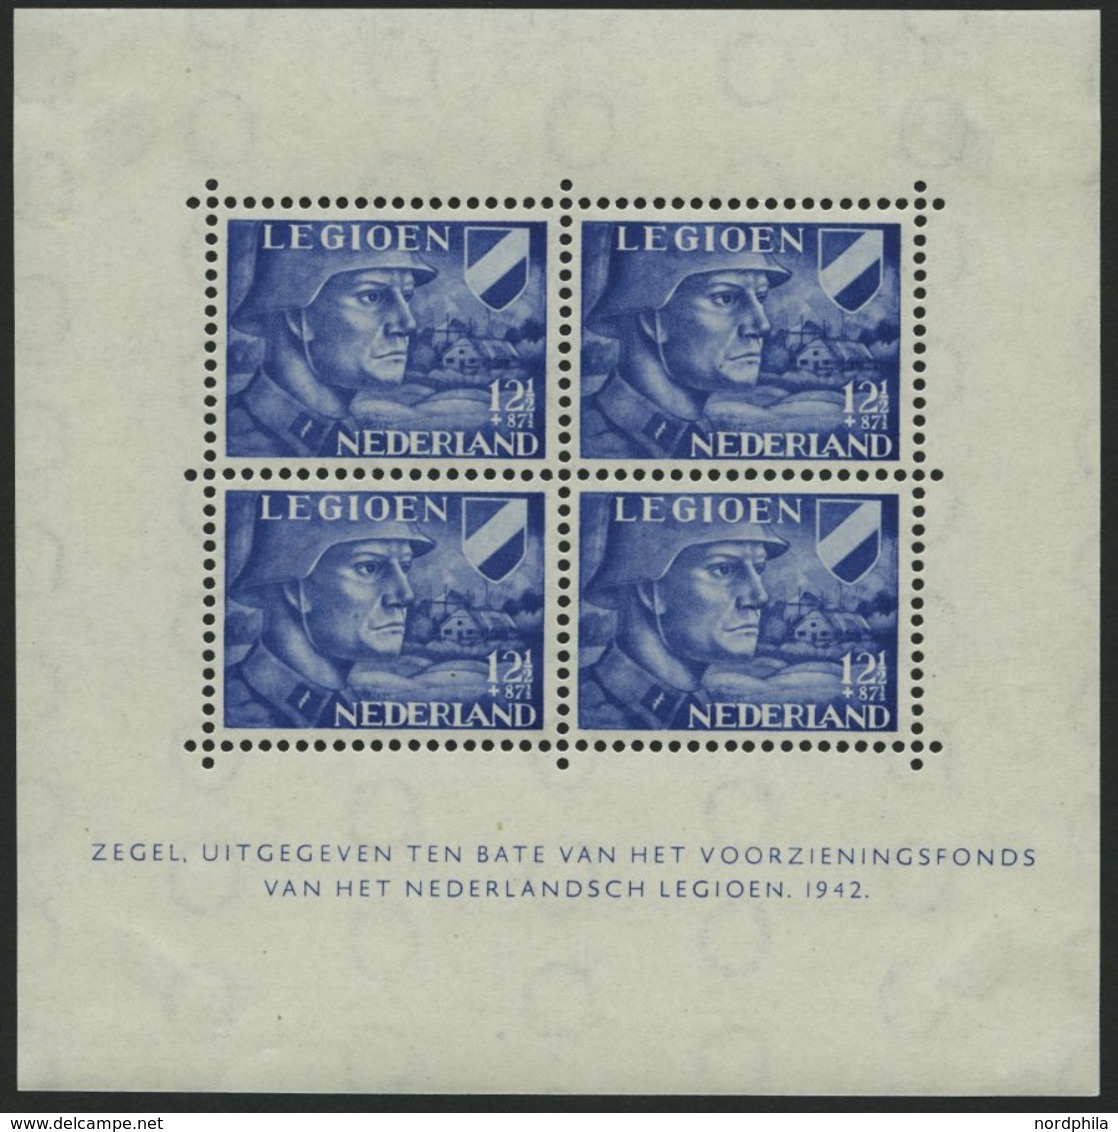 NIEDERLANDE Bl. 1/2 *, 1942, Blockpaar Legion, Marken Postfrisch, Falzreste Im Rand, Pracht - Used Stamps